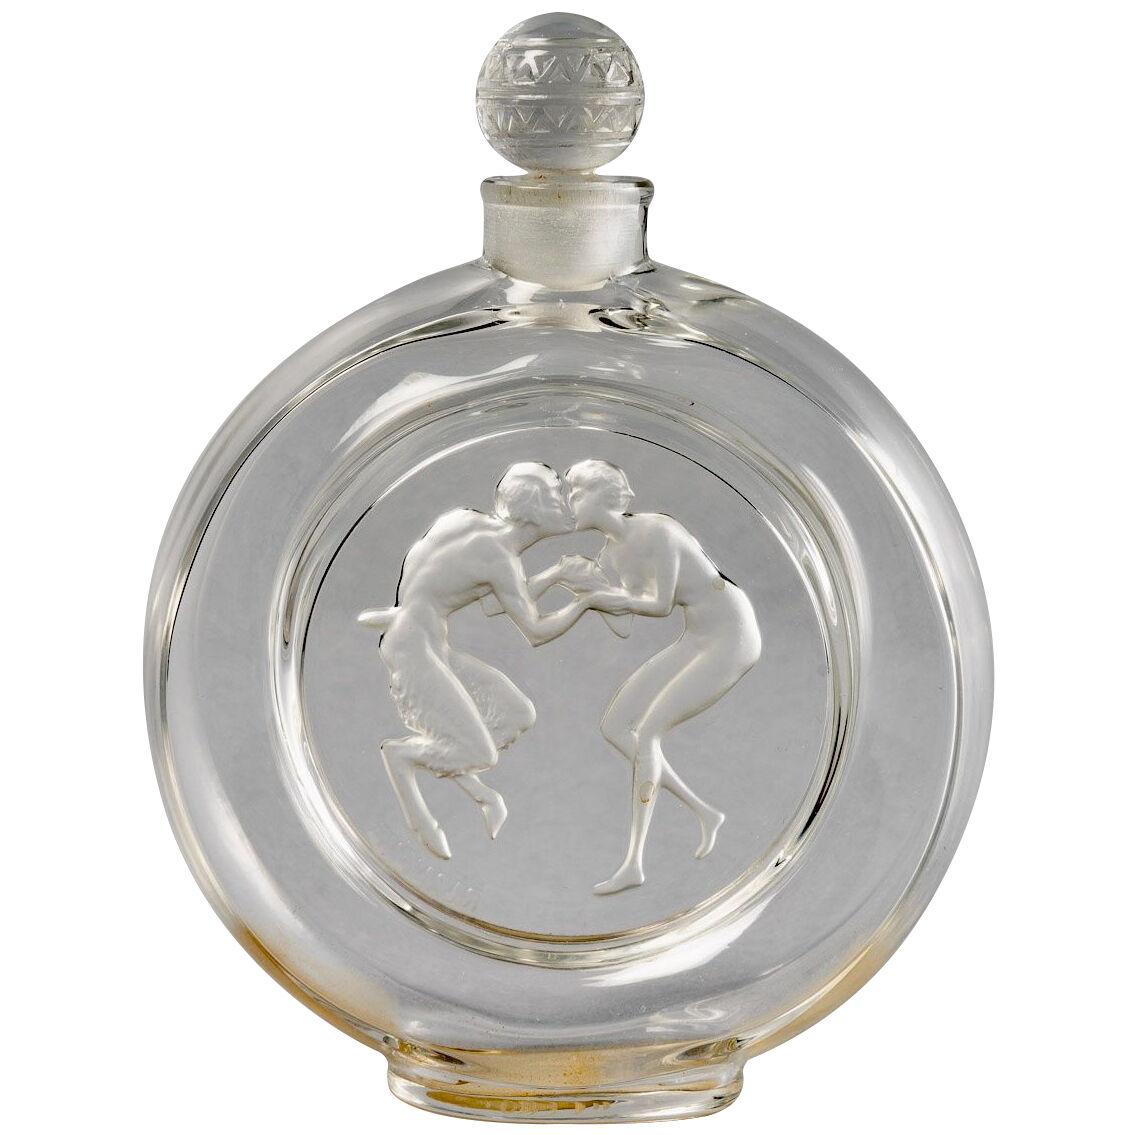 1928 René Lalique Perfume Bottle "Le Baiser du Faune" glass for Molinard